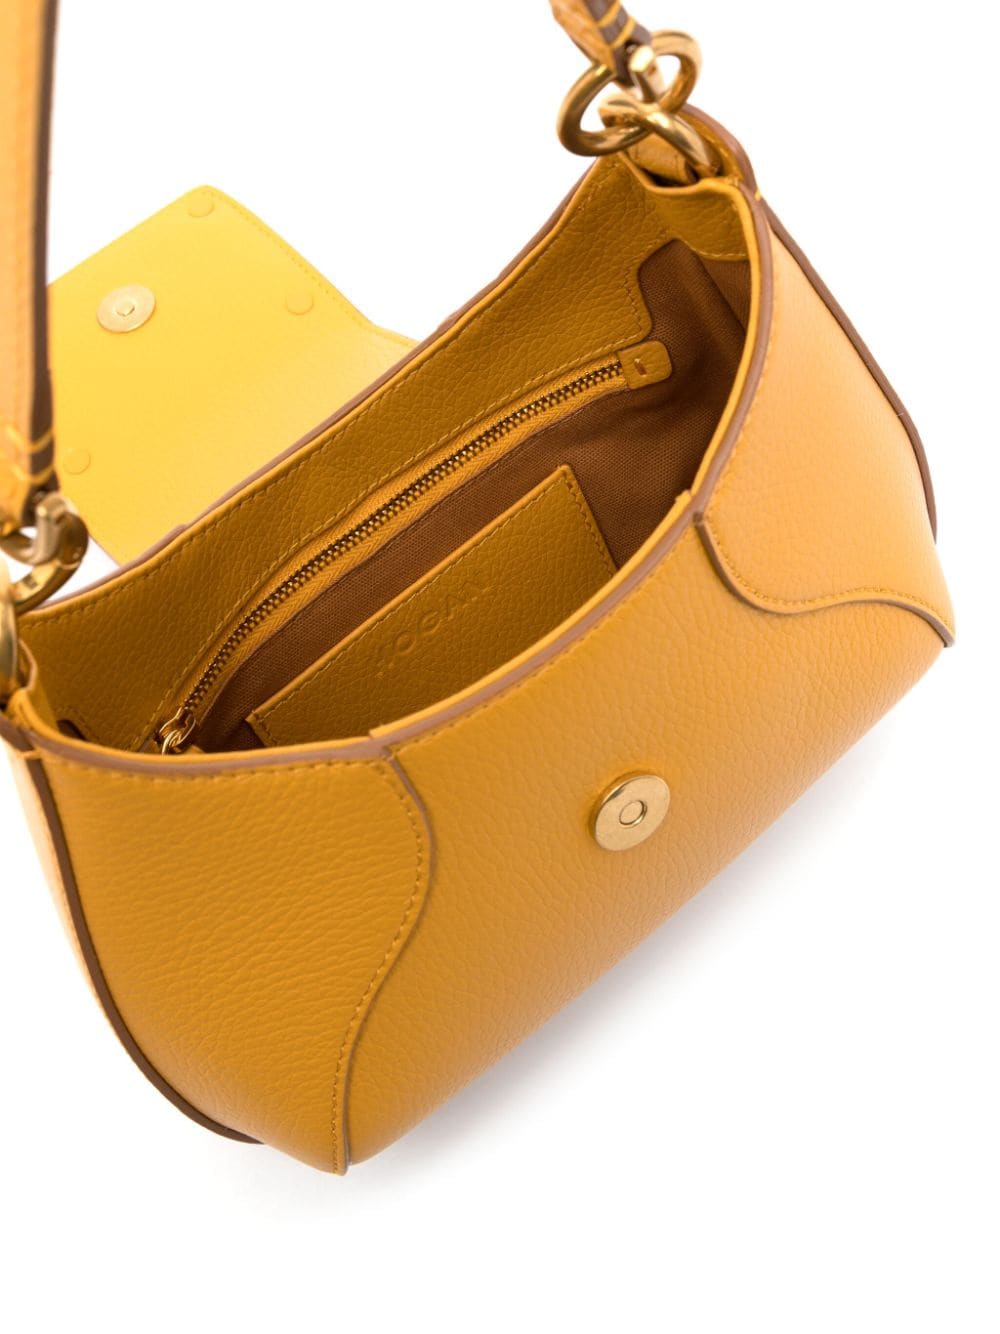 منتج: حقيبة جلدية فاخرة باللون الأصفر العنبري للنساء - مجموعة SS24